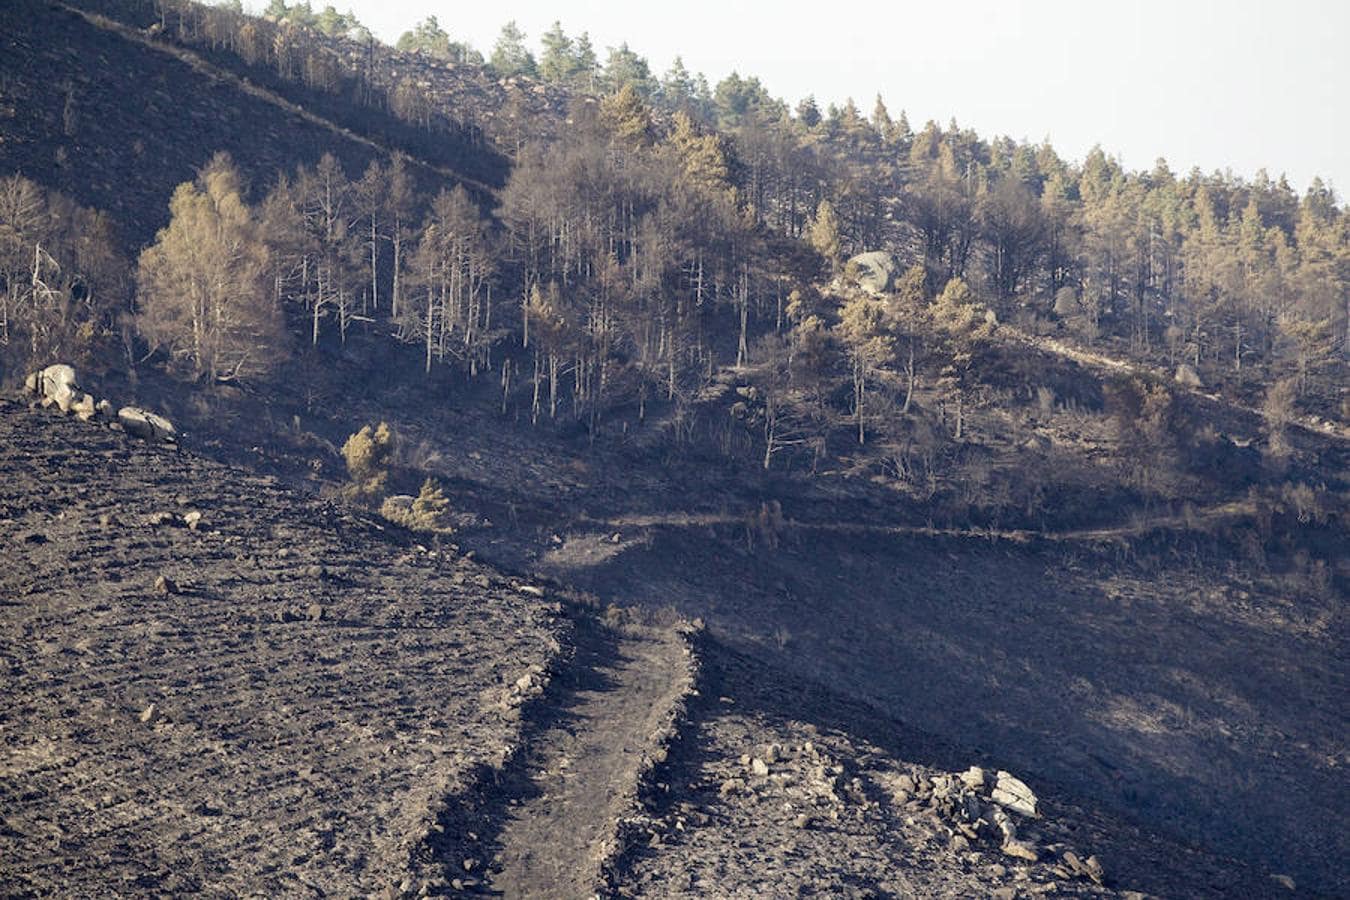 Vista de la zona afectada por el incendio registrado en Chantada (Lugo), en la parroquia de Requeixo, que se encuentra bajo control desde las seis de la madrugada, y, según estimaciones de carácter provisional, la superficie afectada es de un centenar de hectáreas